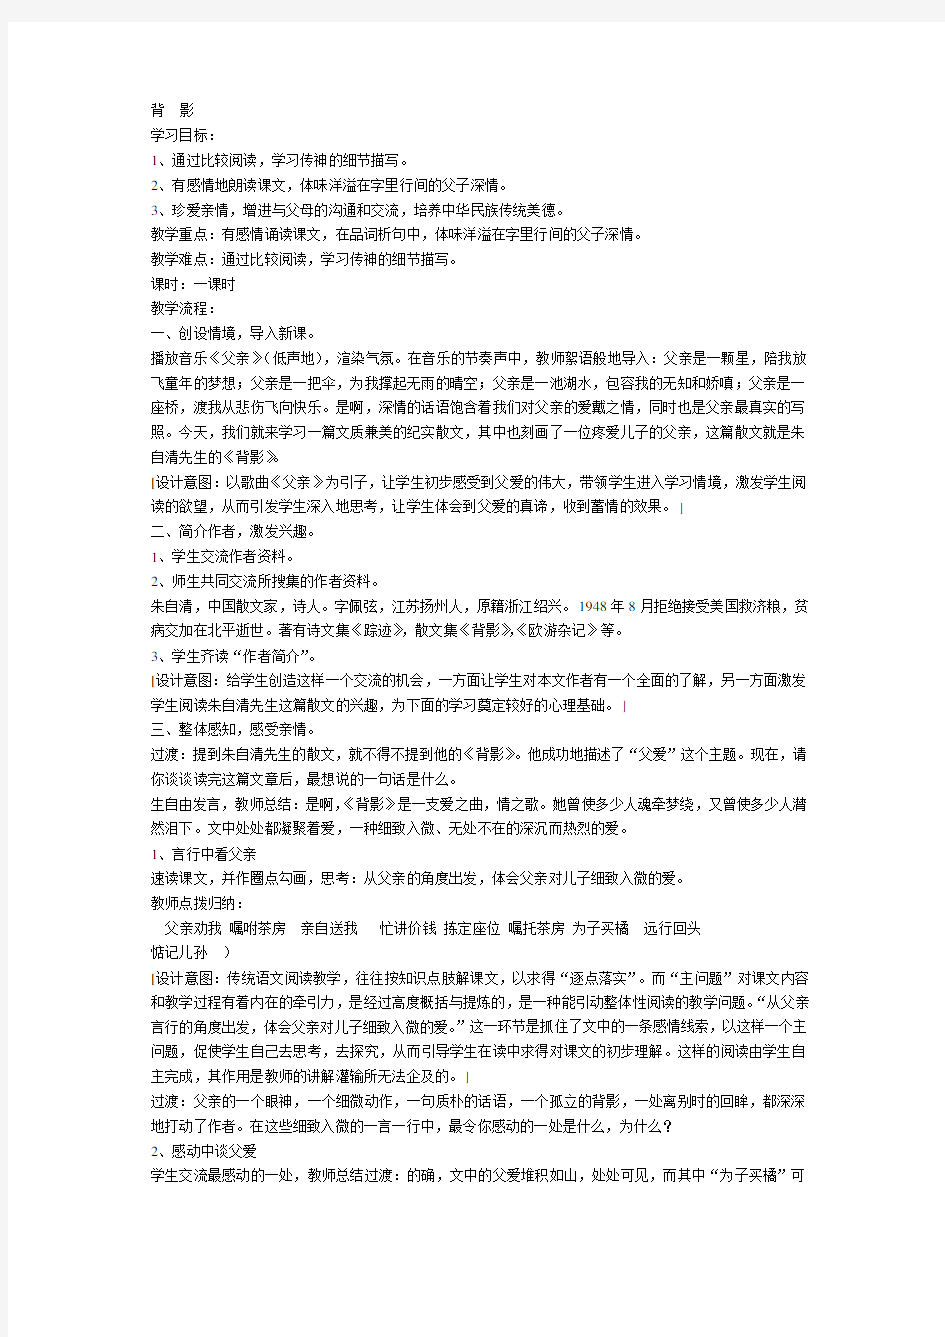 江苏省中学语文优秀教学设计获奖《背影》教案.